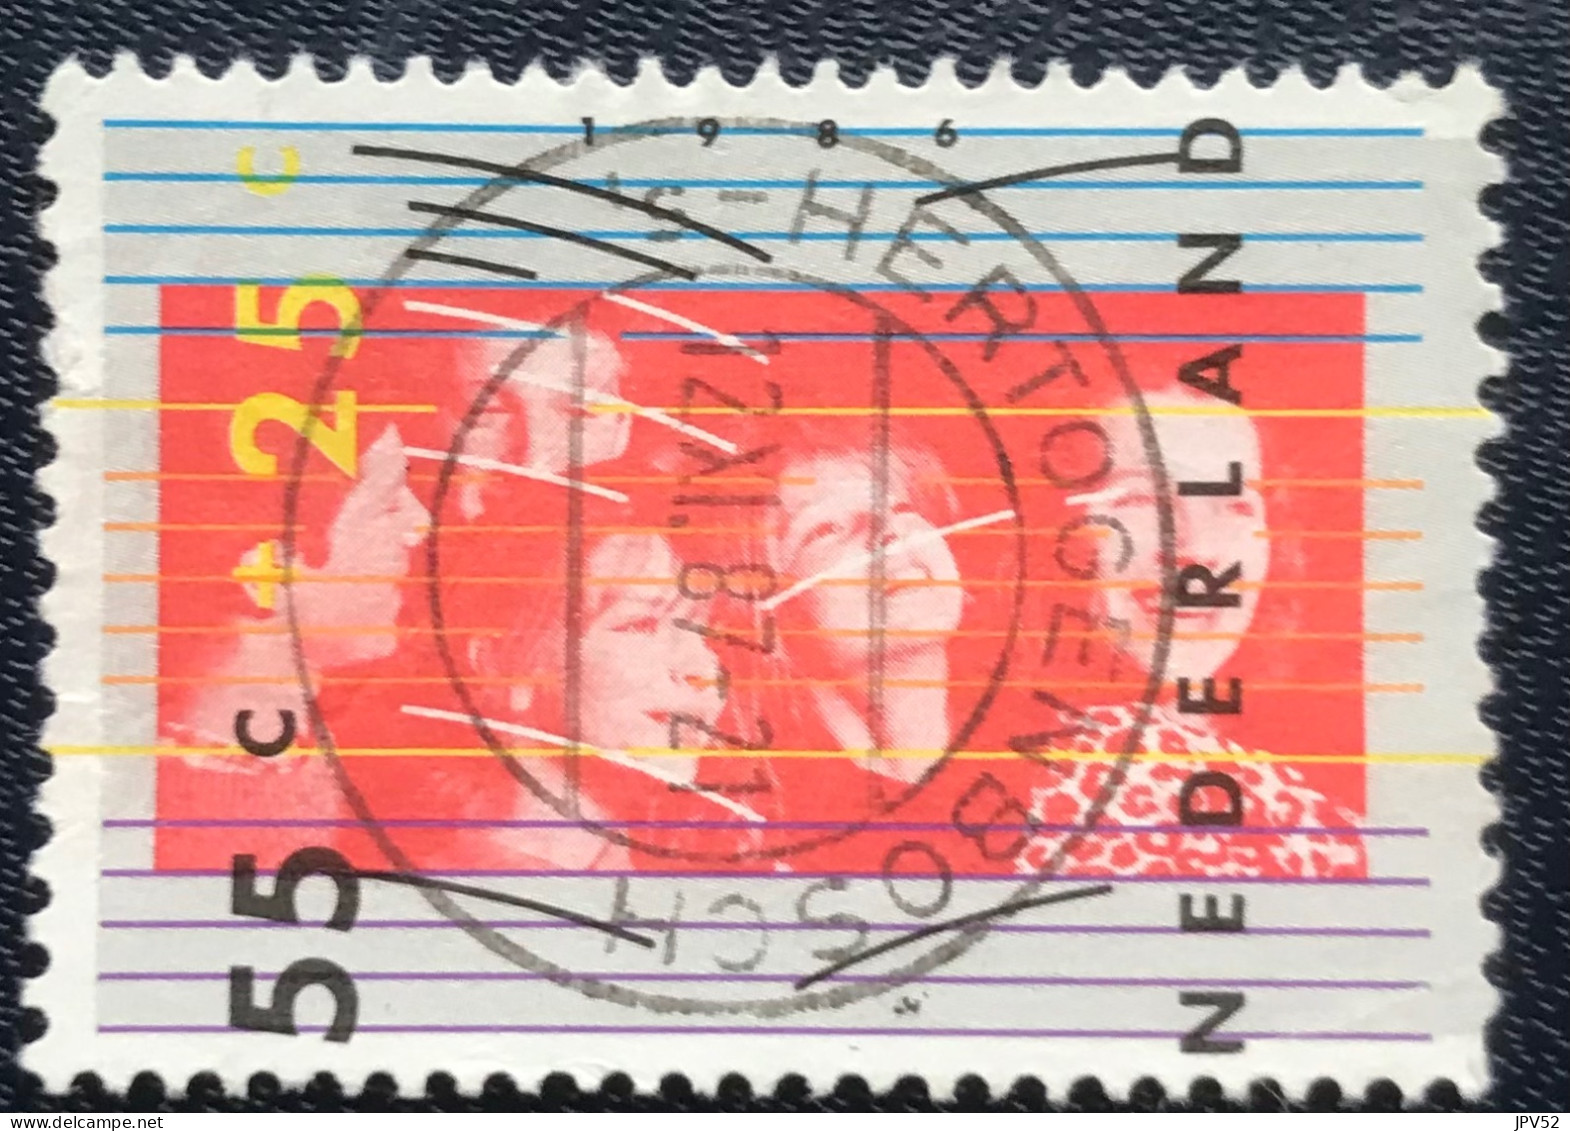 Nederland - C1/23 - 1986 - (°)used - Michel 1307 - Kinderzegel - S HERTOGENBOSCH - Gebraucht